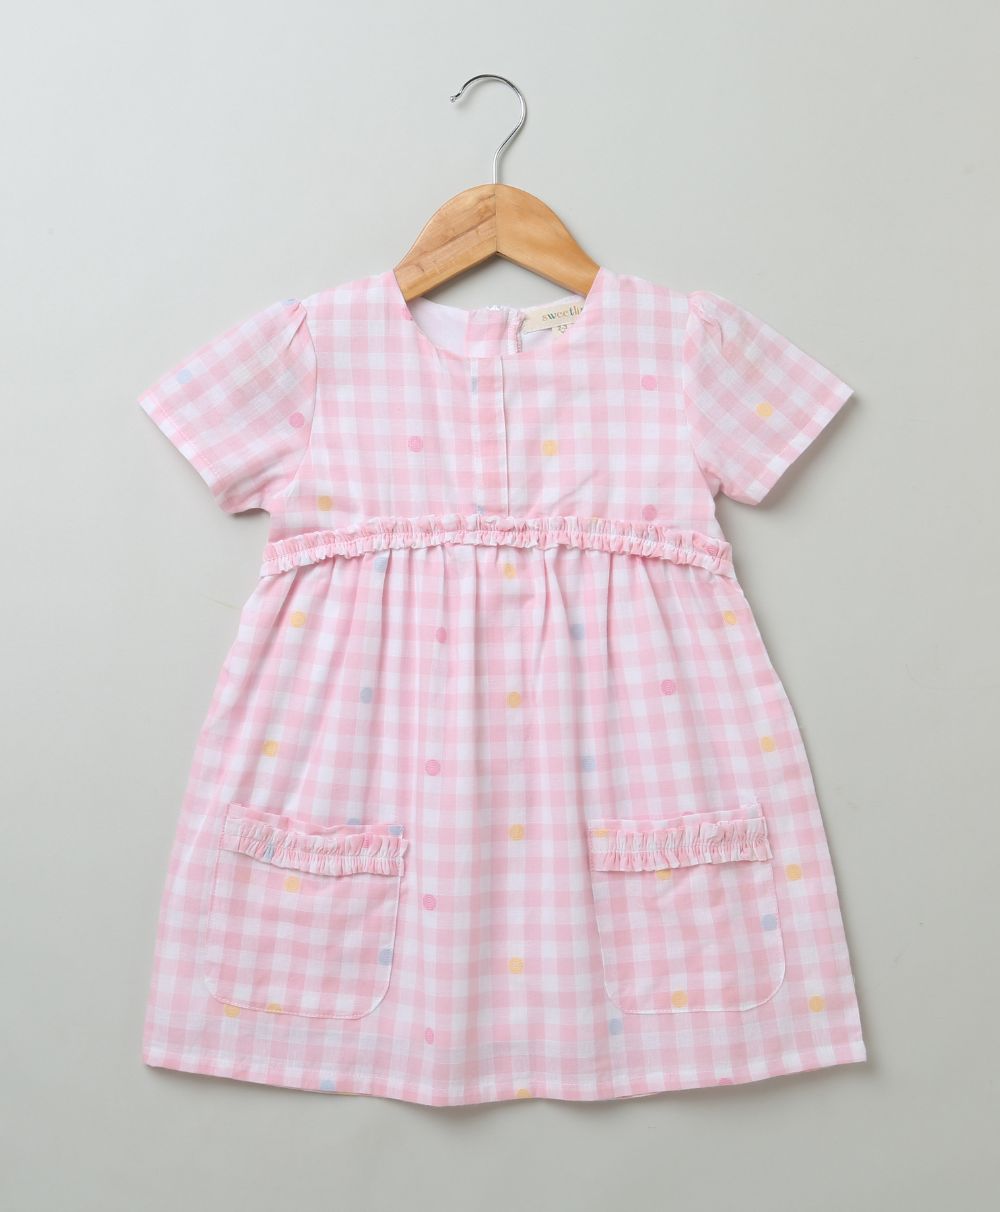 Baby Pink and White Checks Dress